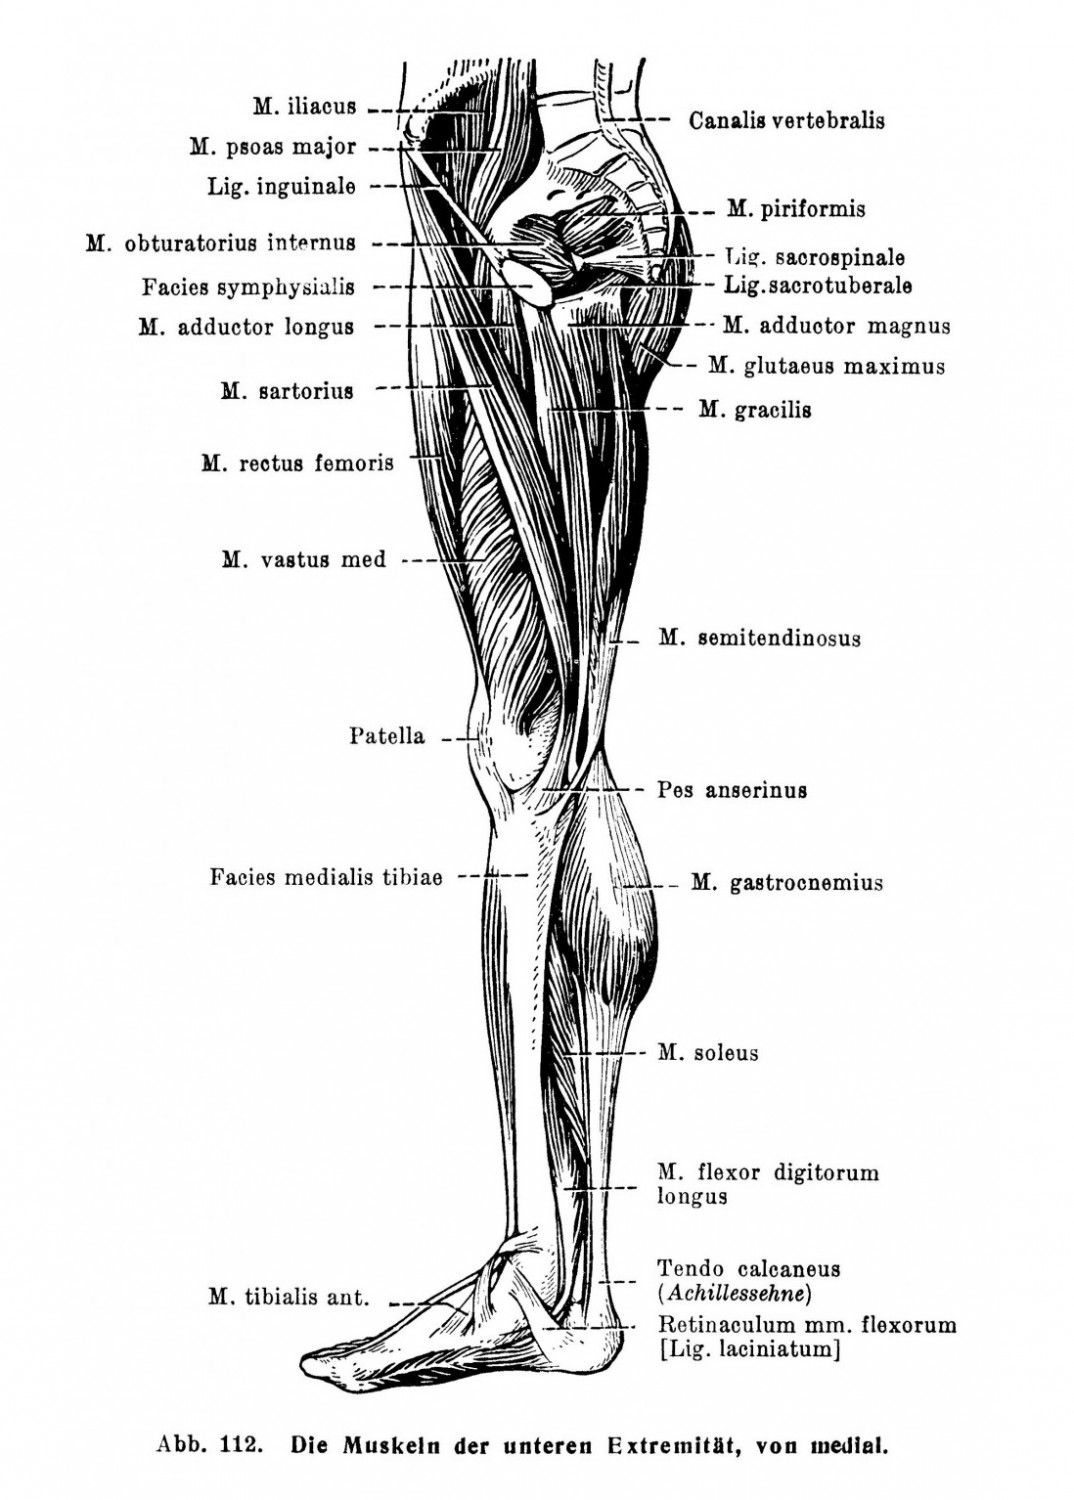 Die Muskeln der unteren Extremität, von medial